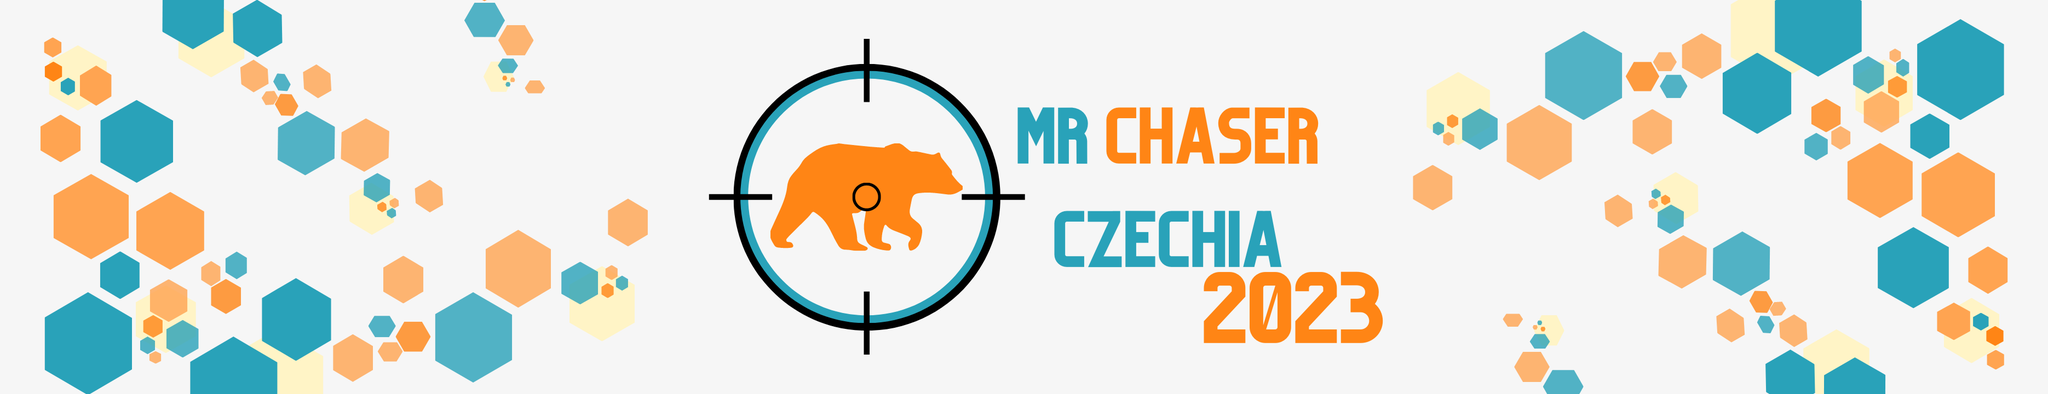 Mr Chaser Czechia 2023